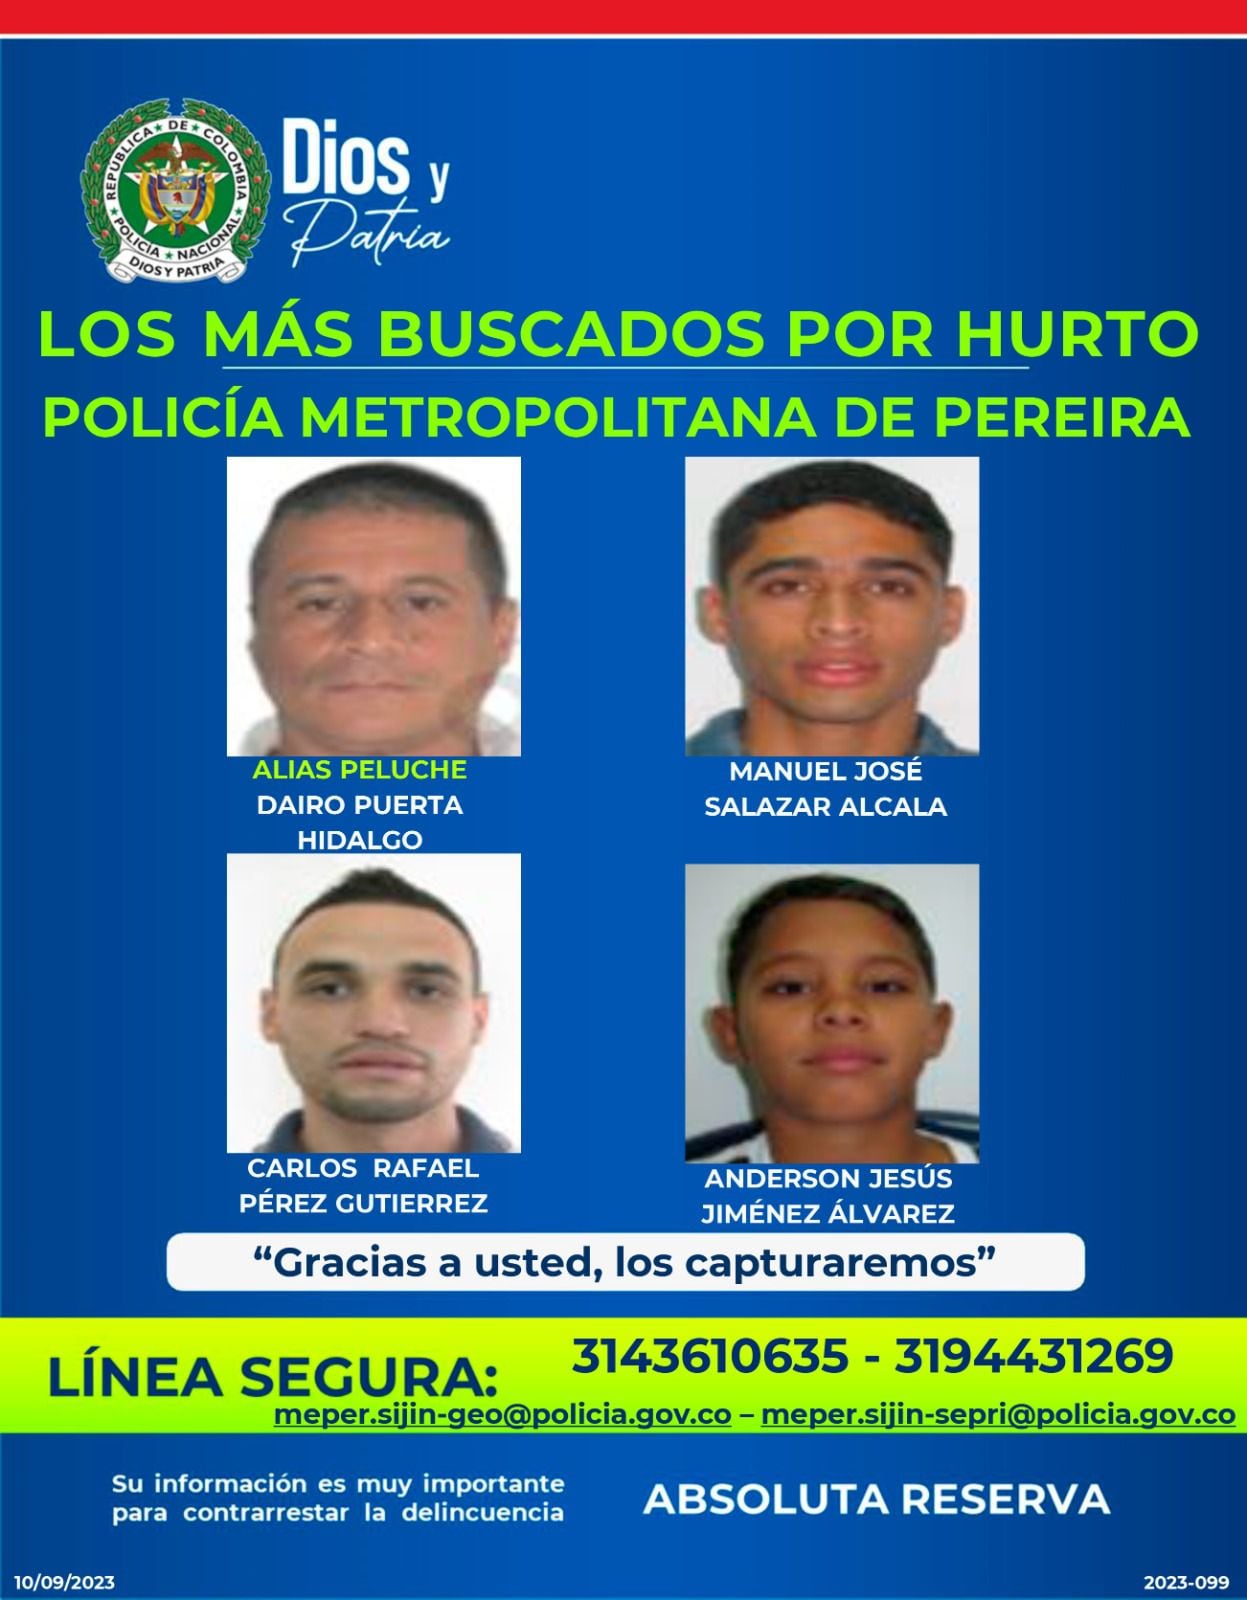 Los más buscados por la Policía en el área Metropolitana de Pereira